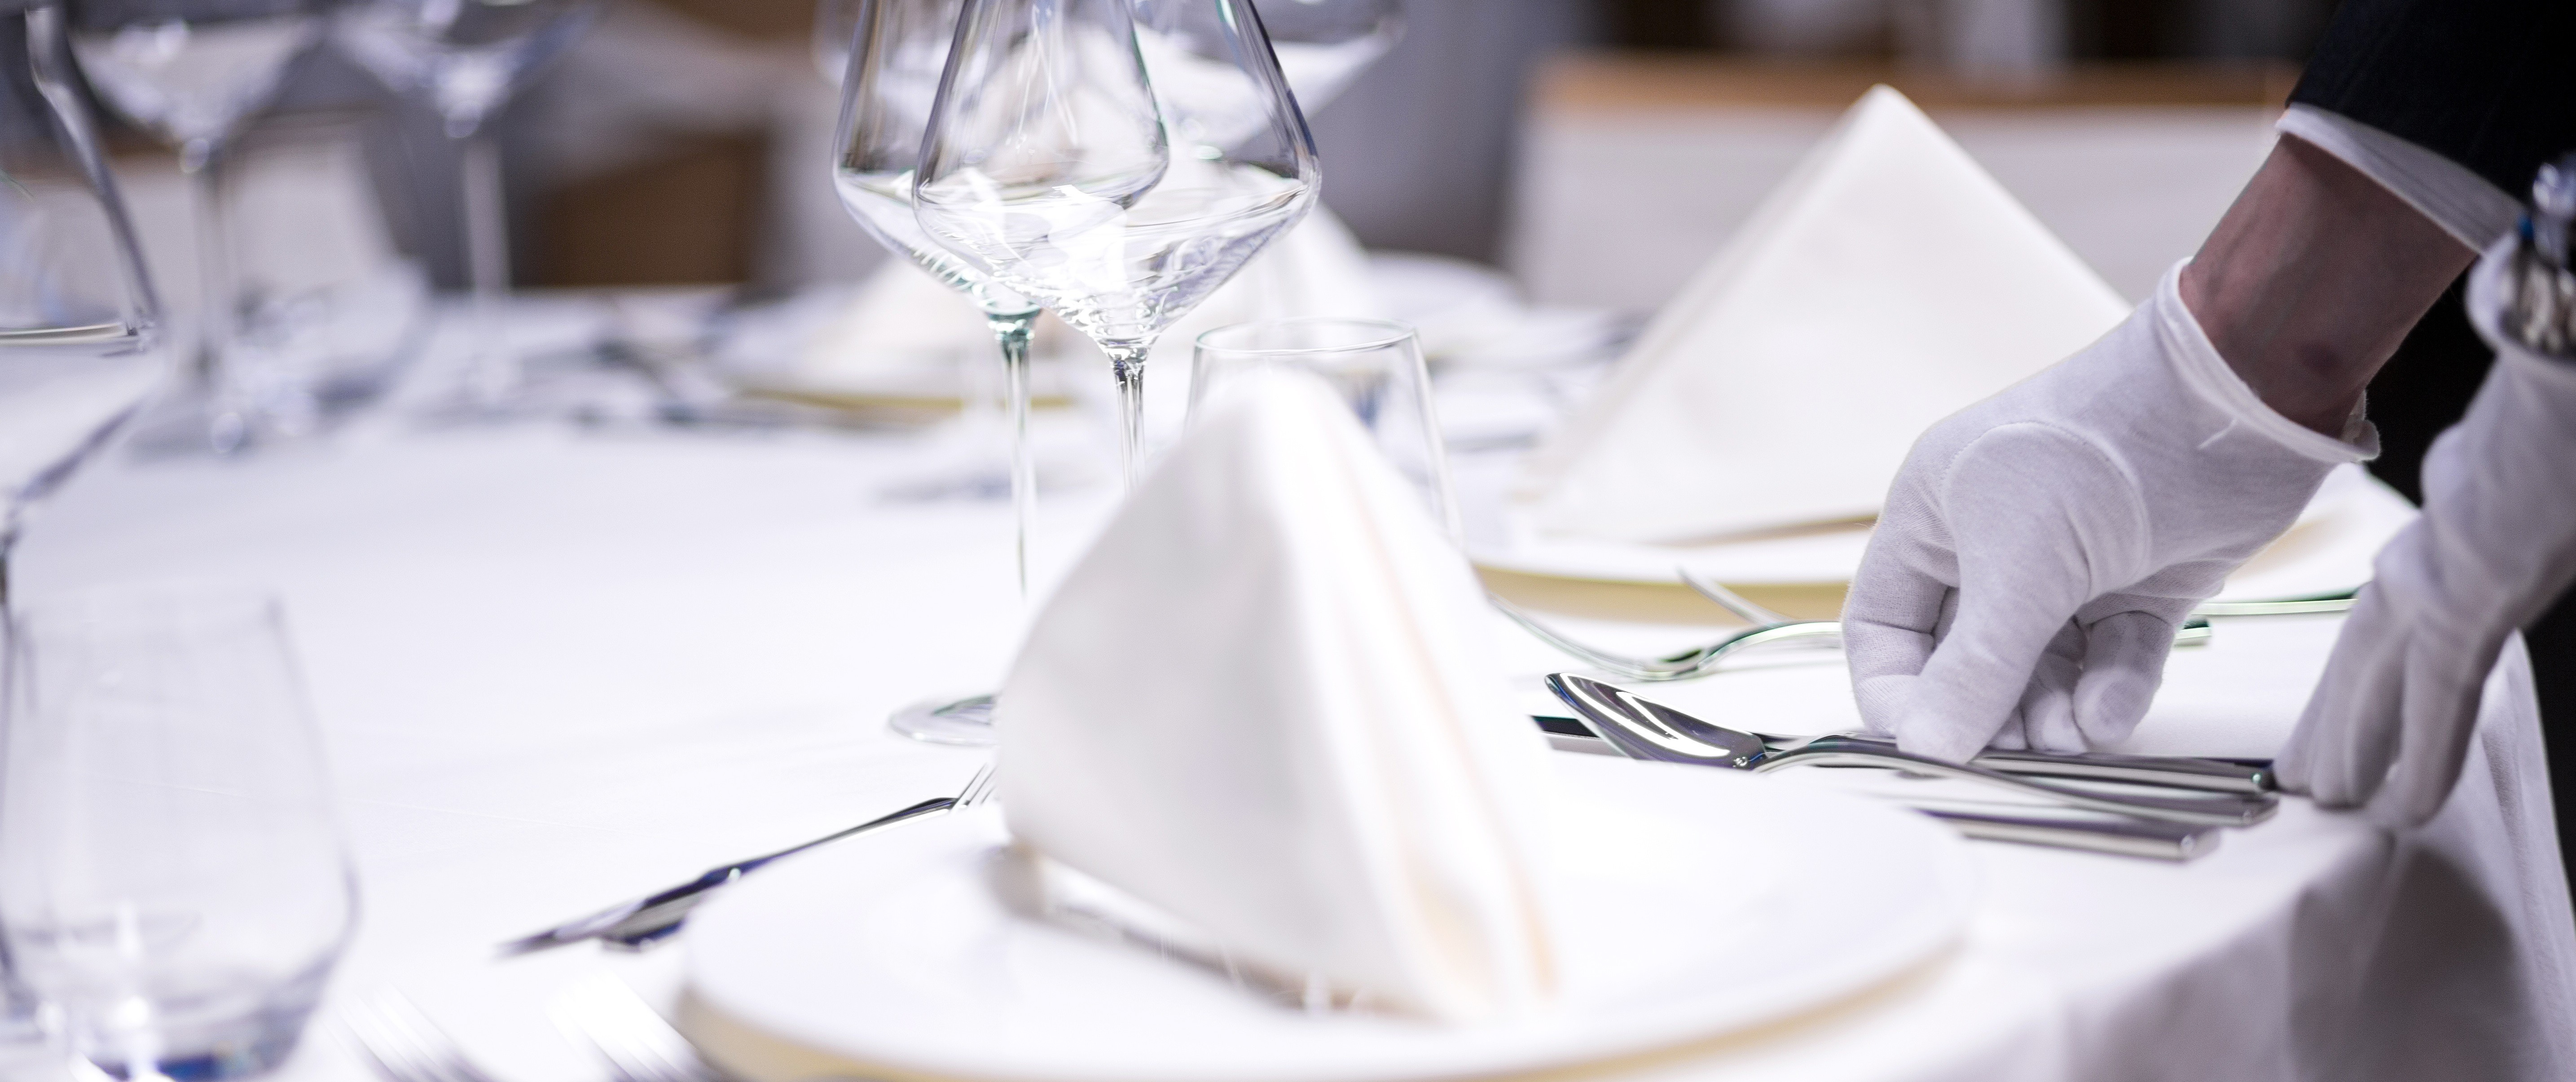 Formation Service à table d'exception pour restaurant d'entreprise et institution publique